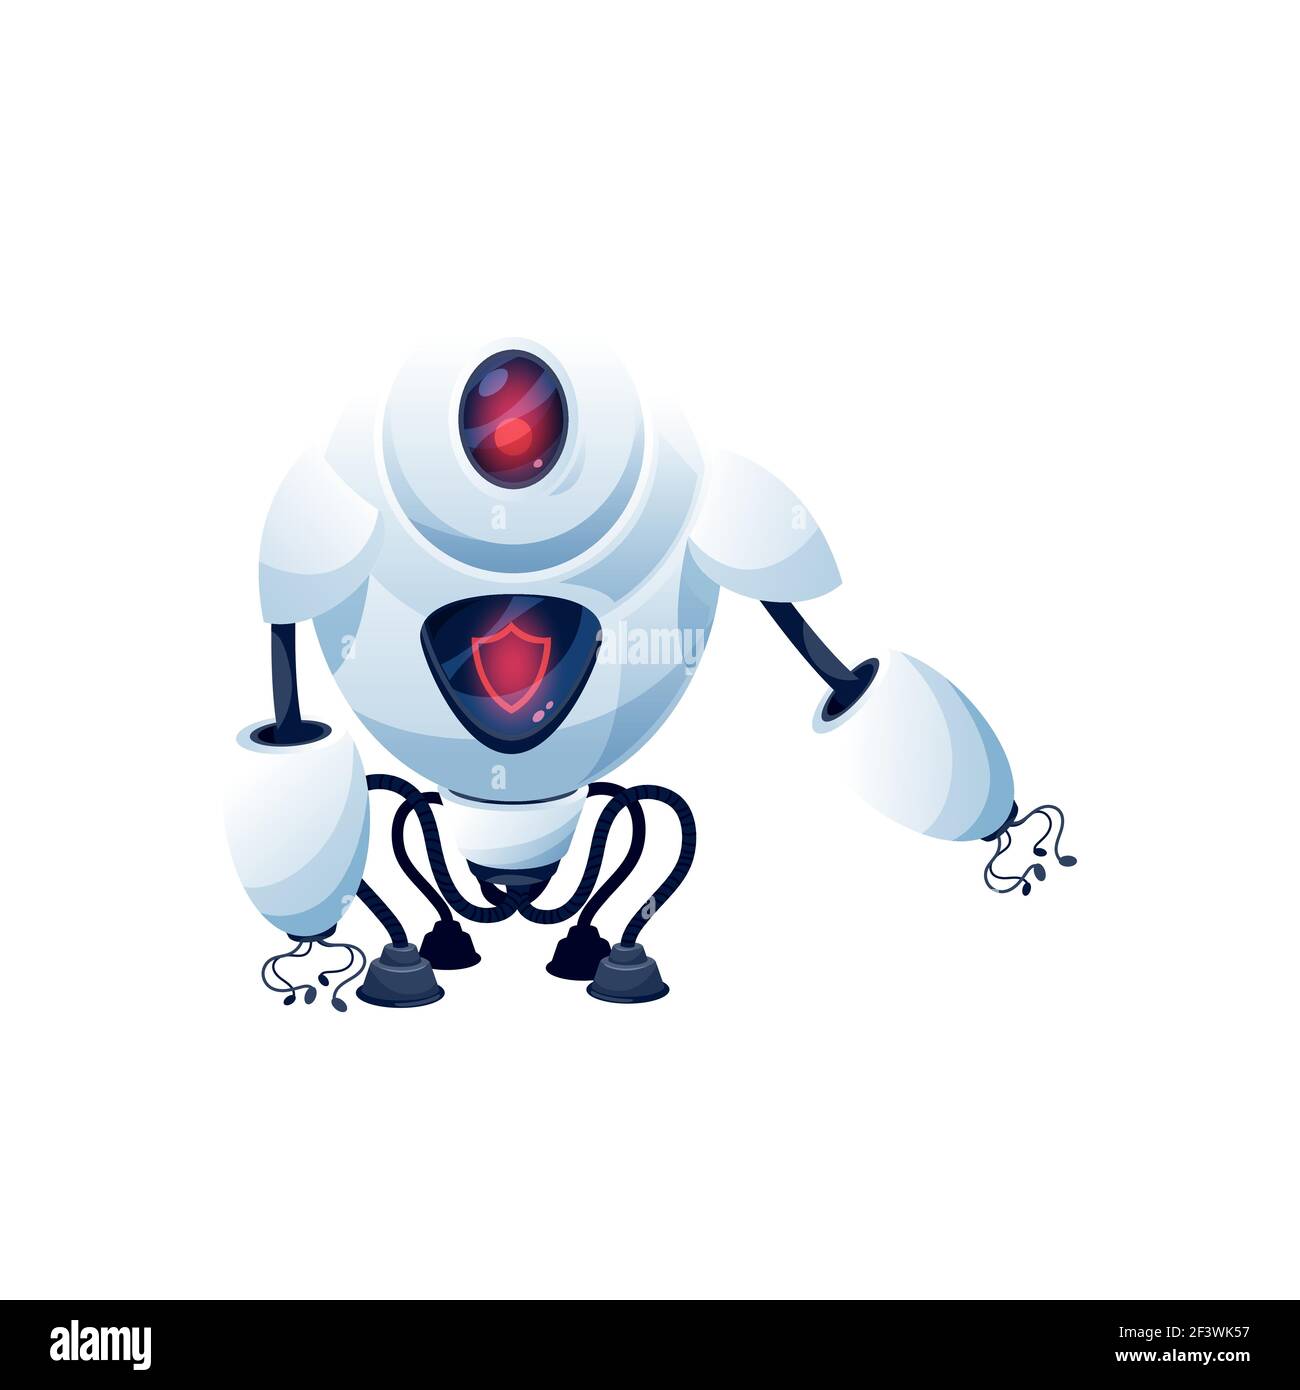 Cartoon Roboter Vektor Cyborg Charakter. Künstliche Intelligenz Technologie, Spielzeug oder bot Guard mit digitalen glühenden roten Gesicht, flexible Beine auf Sauger, Zelt Stock Vektor